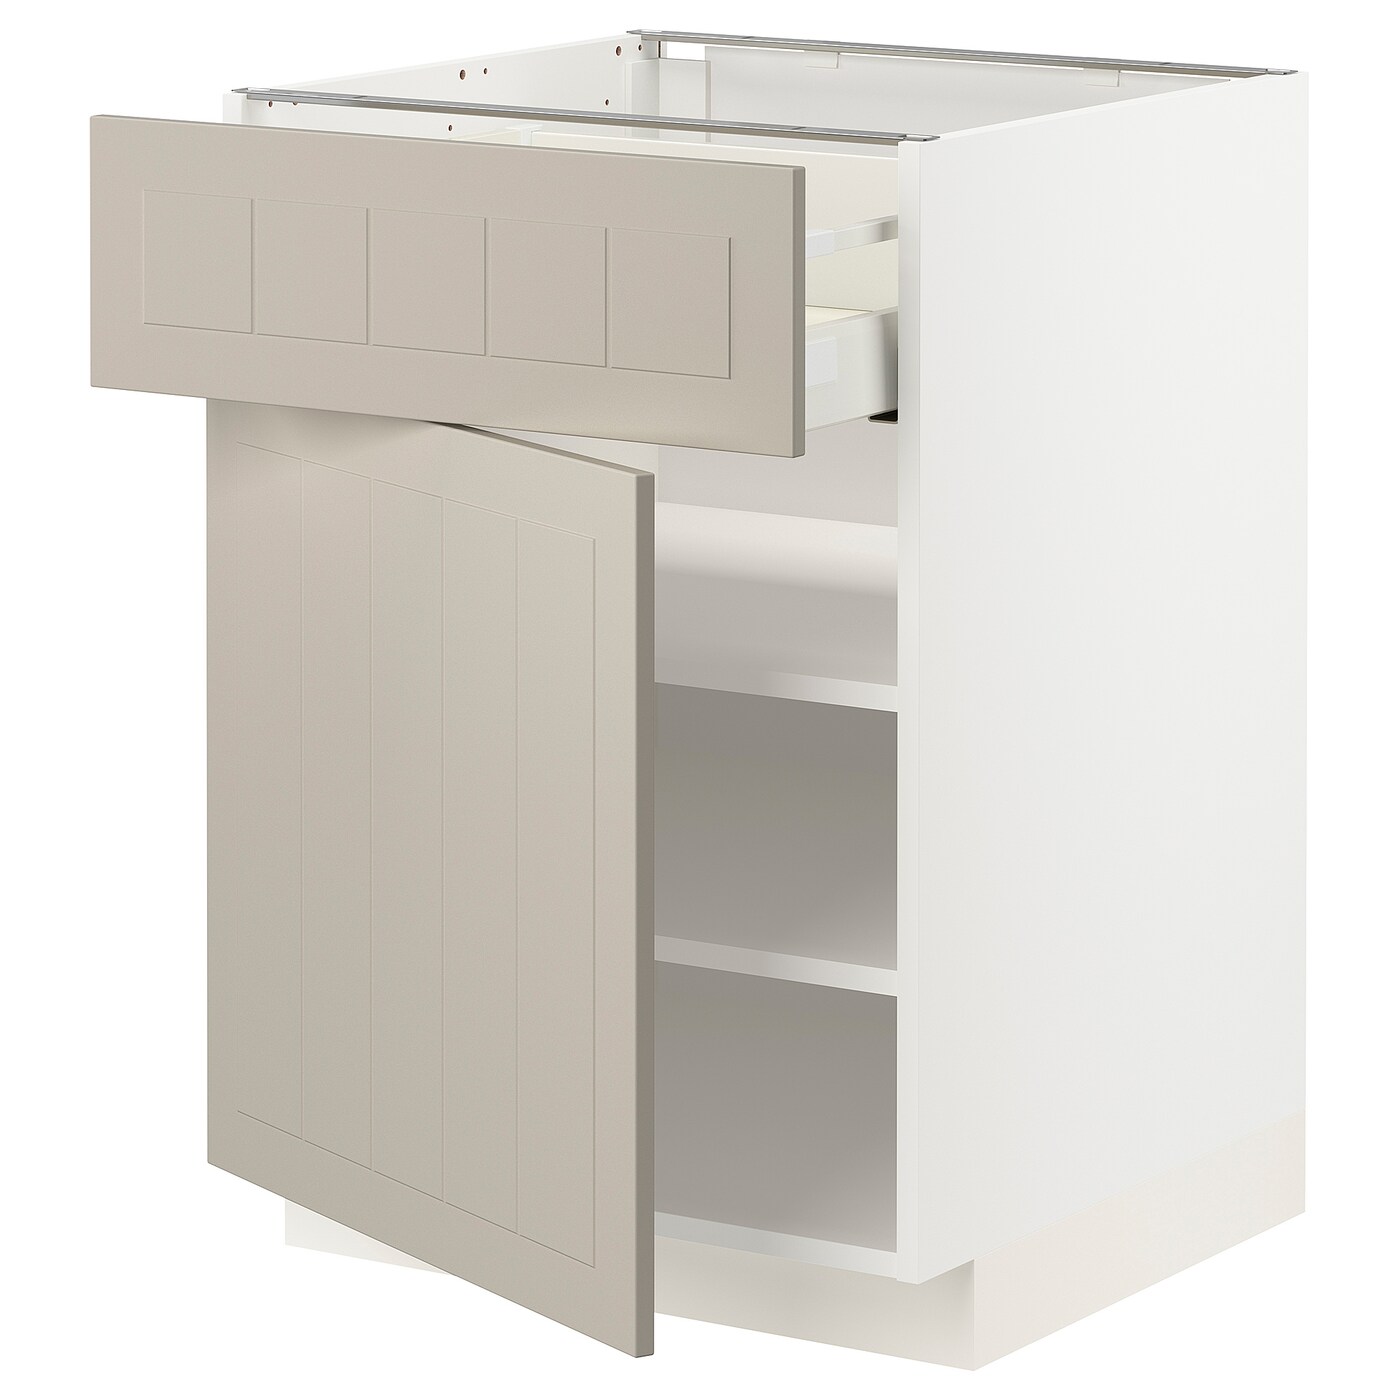 Напольный кухонный шкаф  - IKEA METOD MAXIMERA, 88x62x60см, белый/бежевый, МЕТОД МАКСИМЕРА ИКЕА